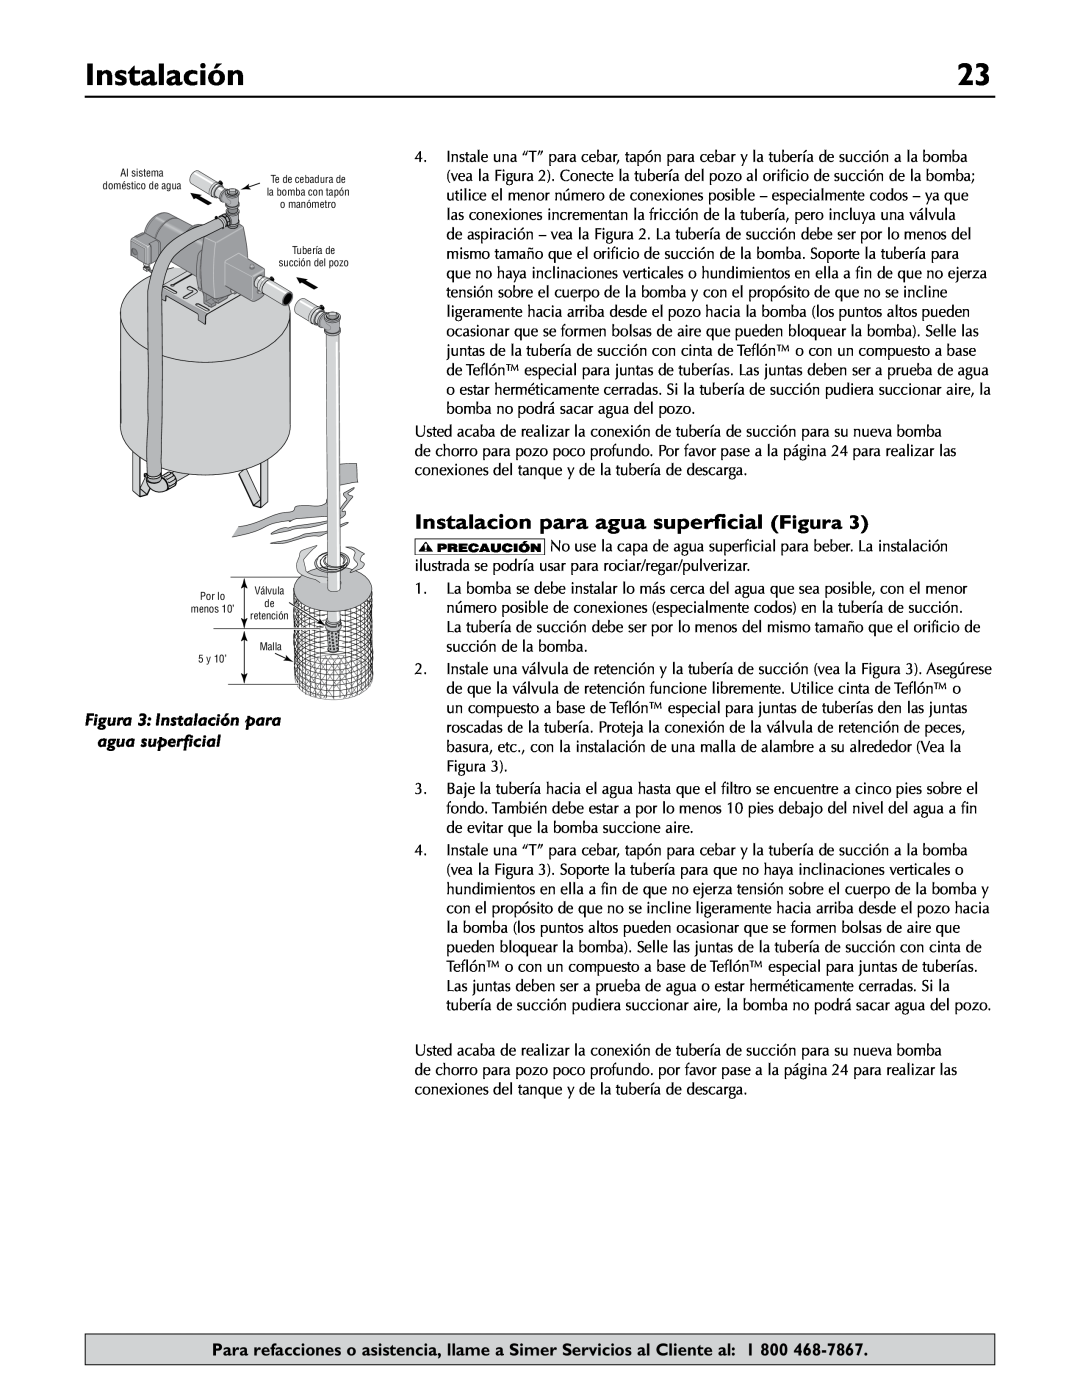 Simer Pumps 2.81E+01 owner manual Instalacion para agua superficial Figura, Instalación 